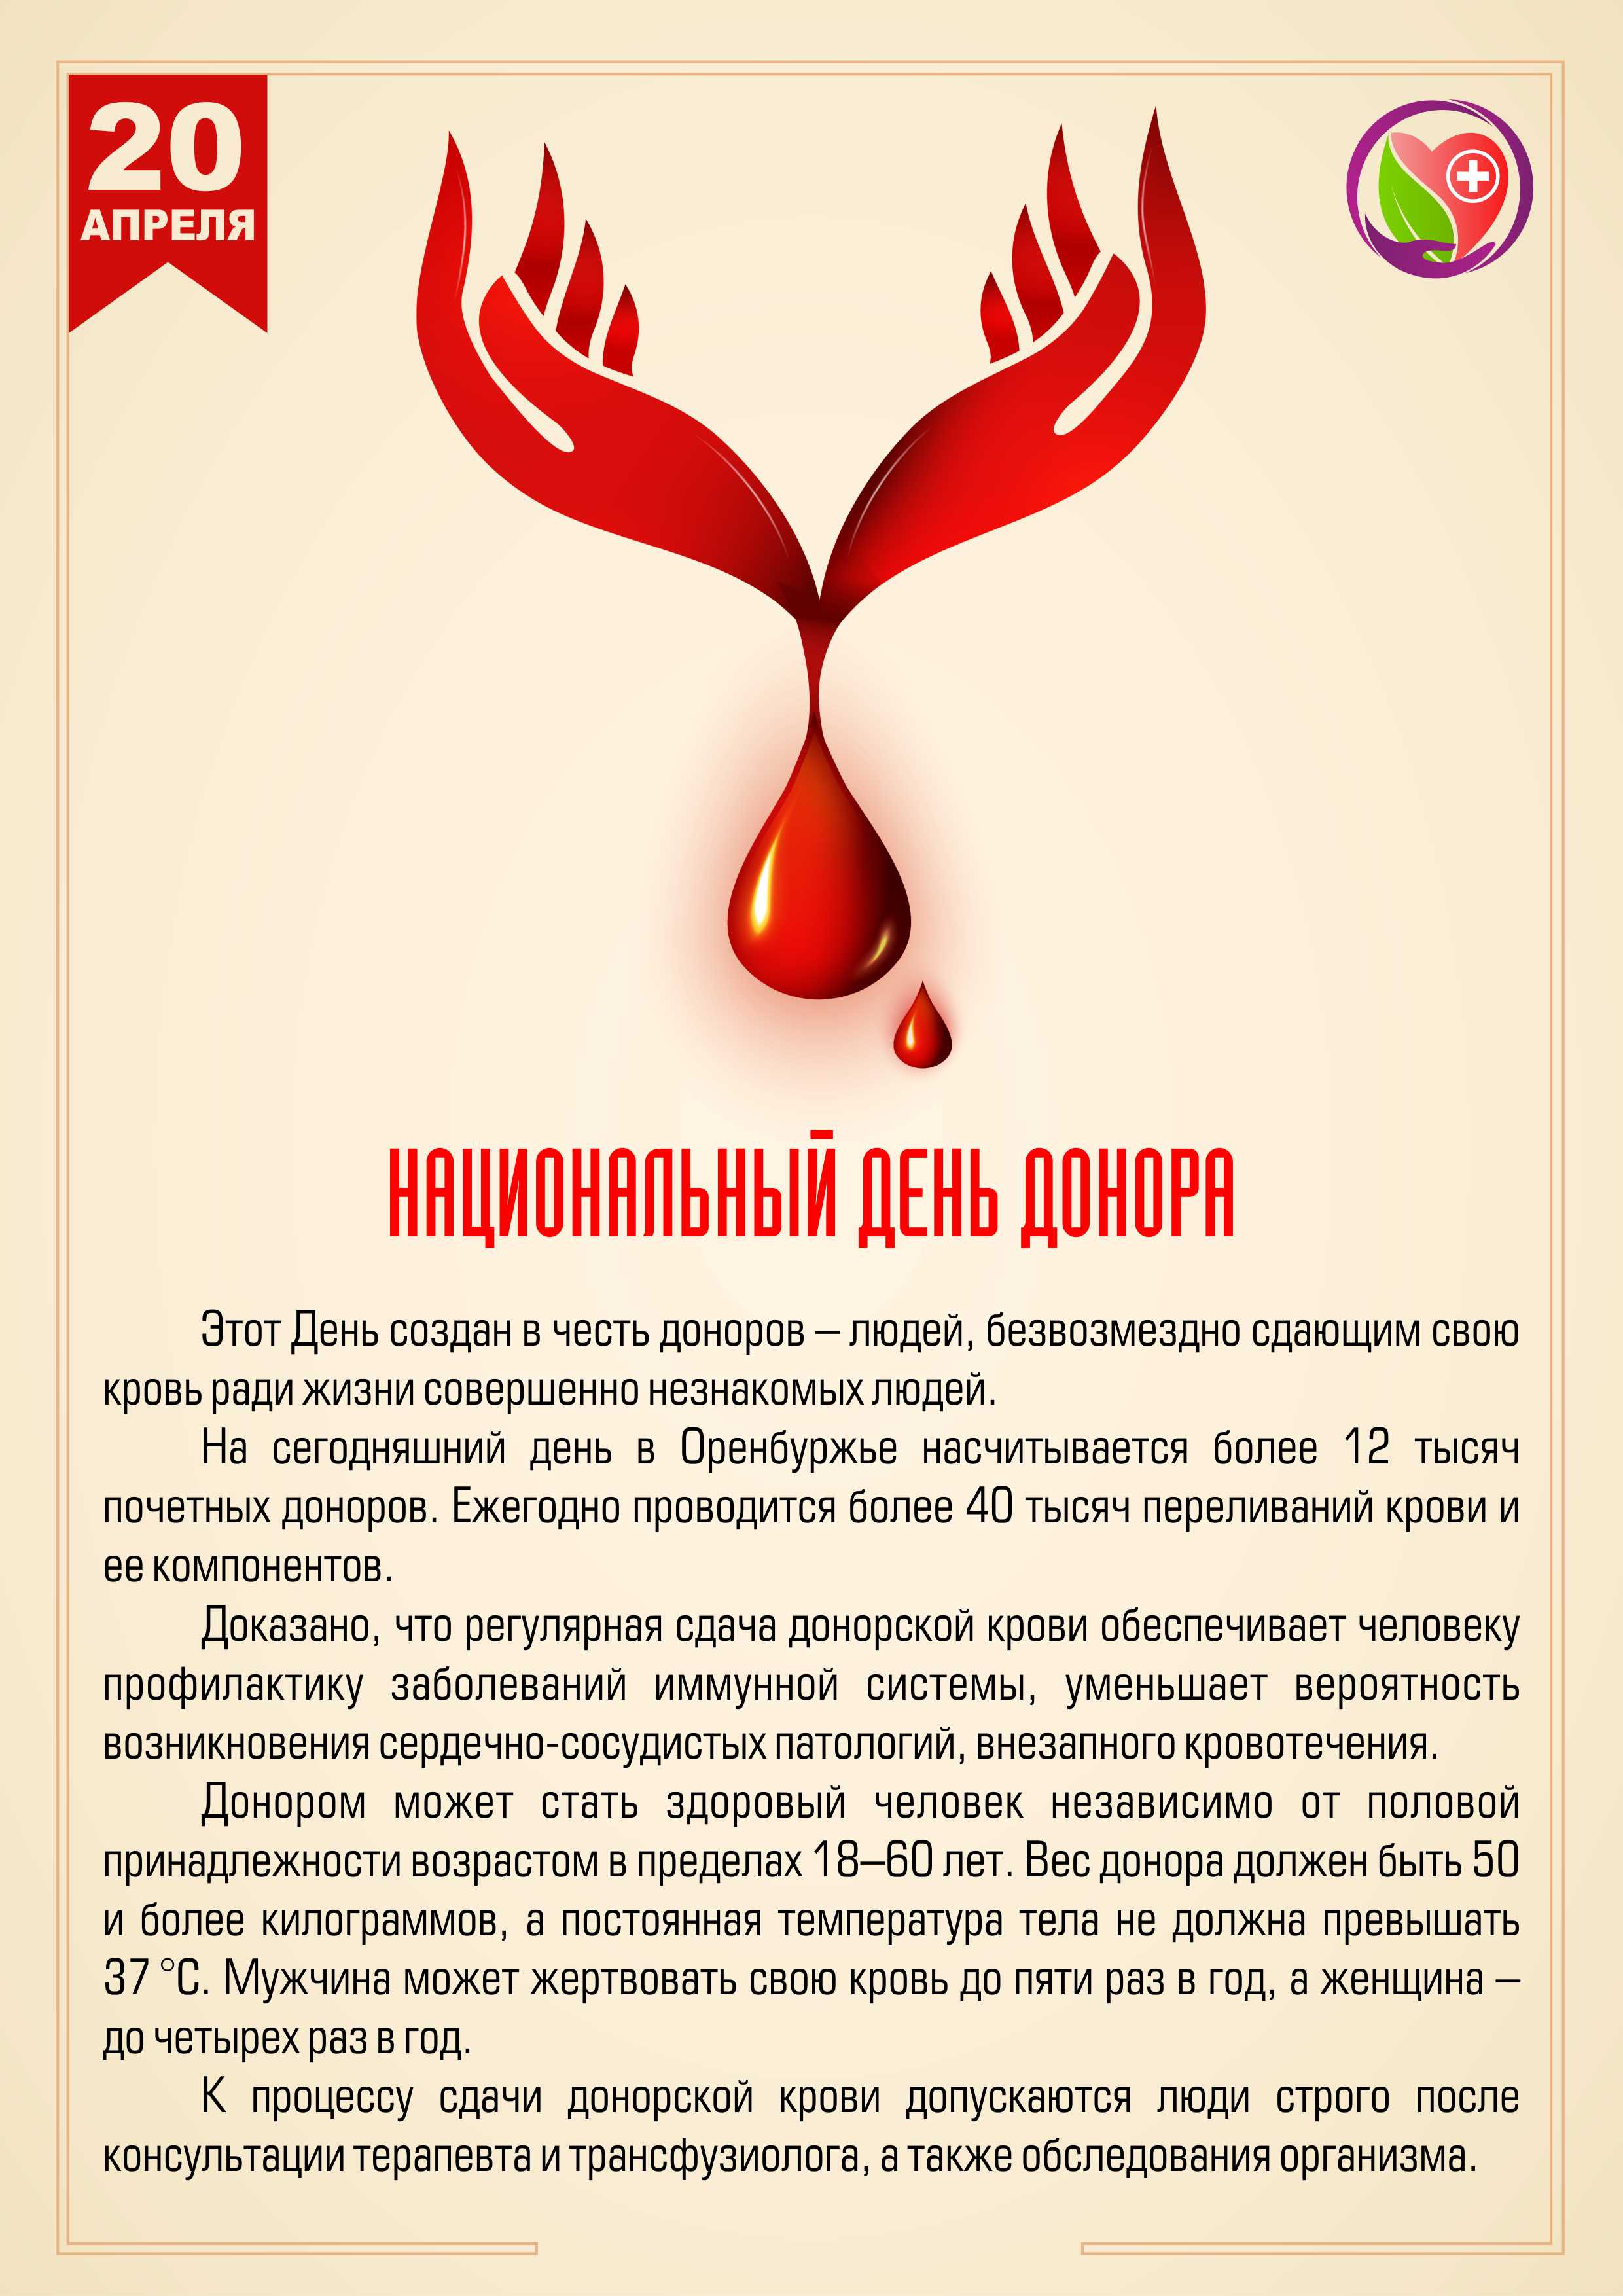 Российский день донора крови